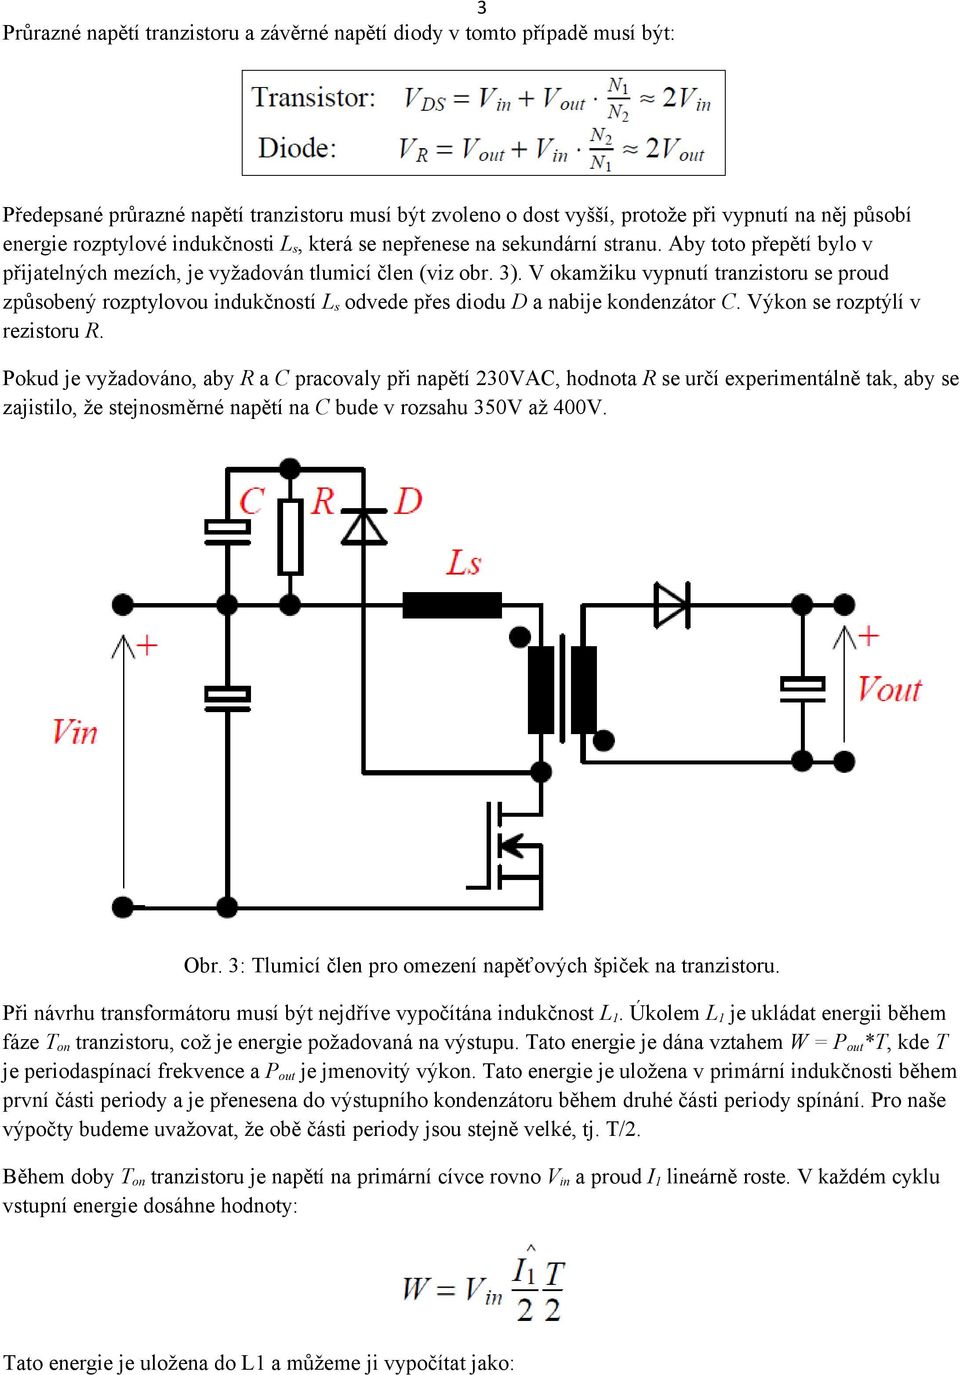 V okamžiku vypnutí tranzistoru se proud způsobený rozptylovou indukčností L s odvede přes diodu D a nabije kondenzátor C. Výkon se rozptýlí v rezistoru R.